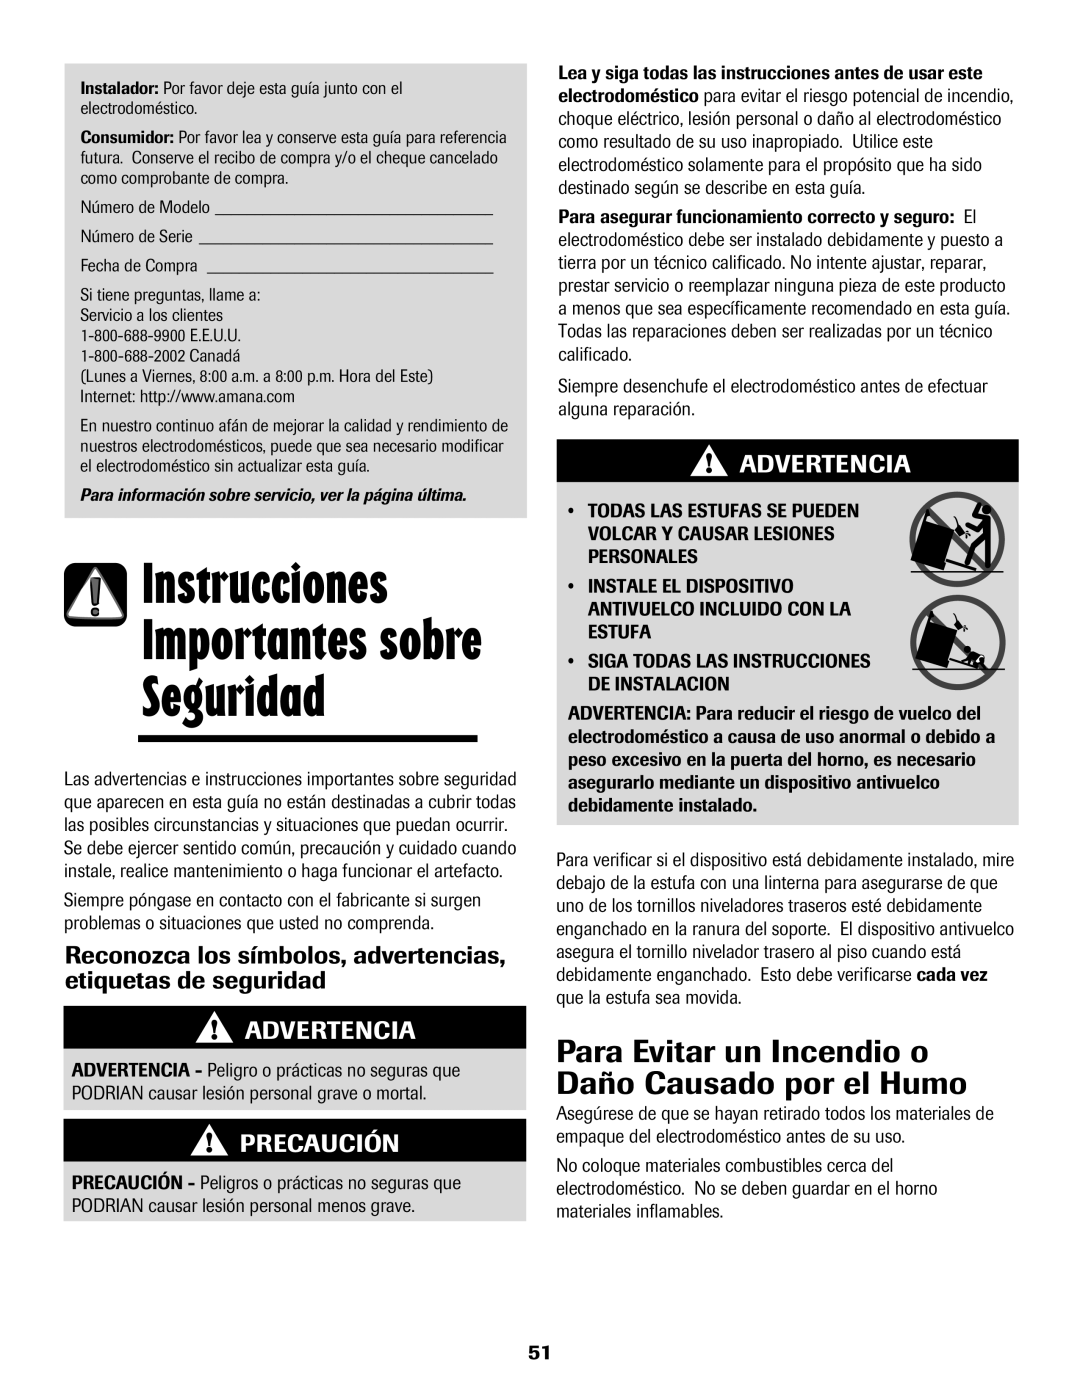 Amana 8113P598-60 manual Para Evitar un Incendio o Daño Causado por el Humo, Advertencia, Precaución 